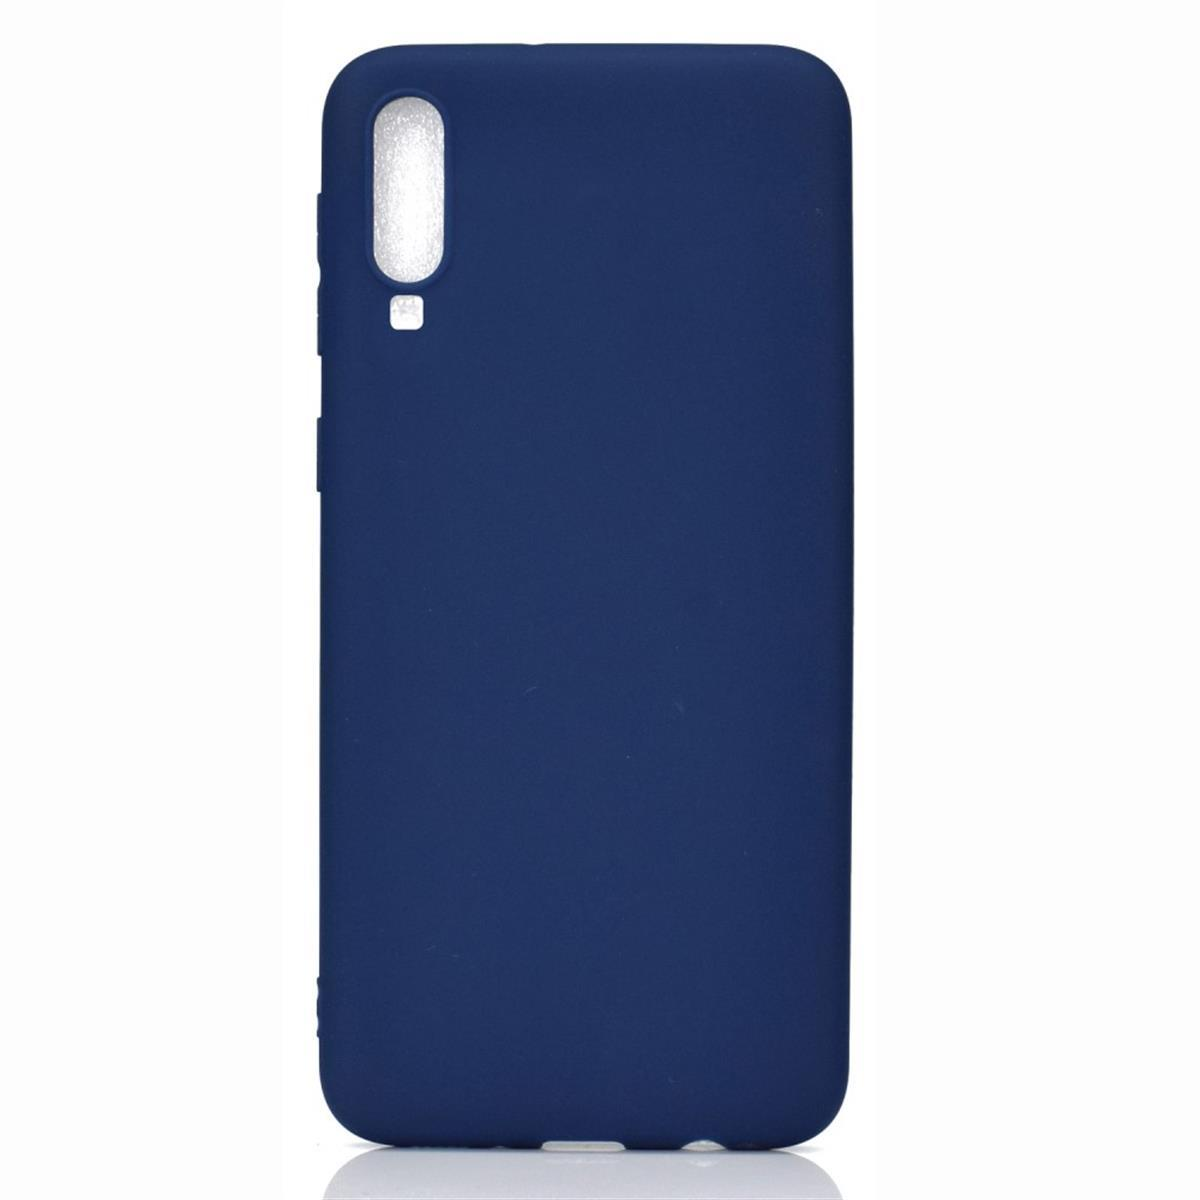 COVERKINGZ Handycase aus Silikon, Backcover, Blau Samsung, A70, Galaxy